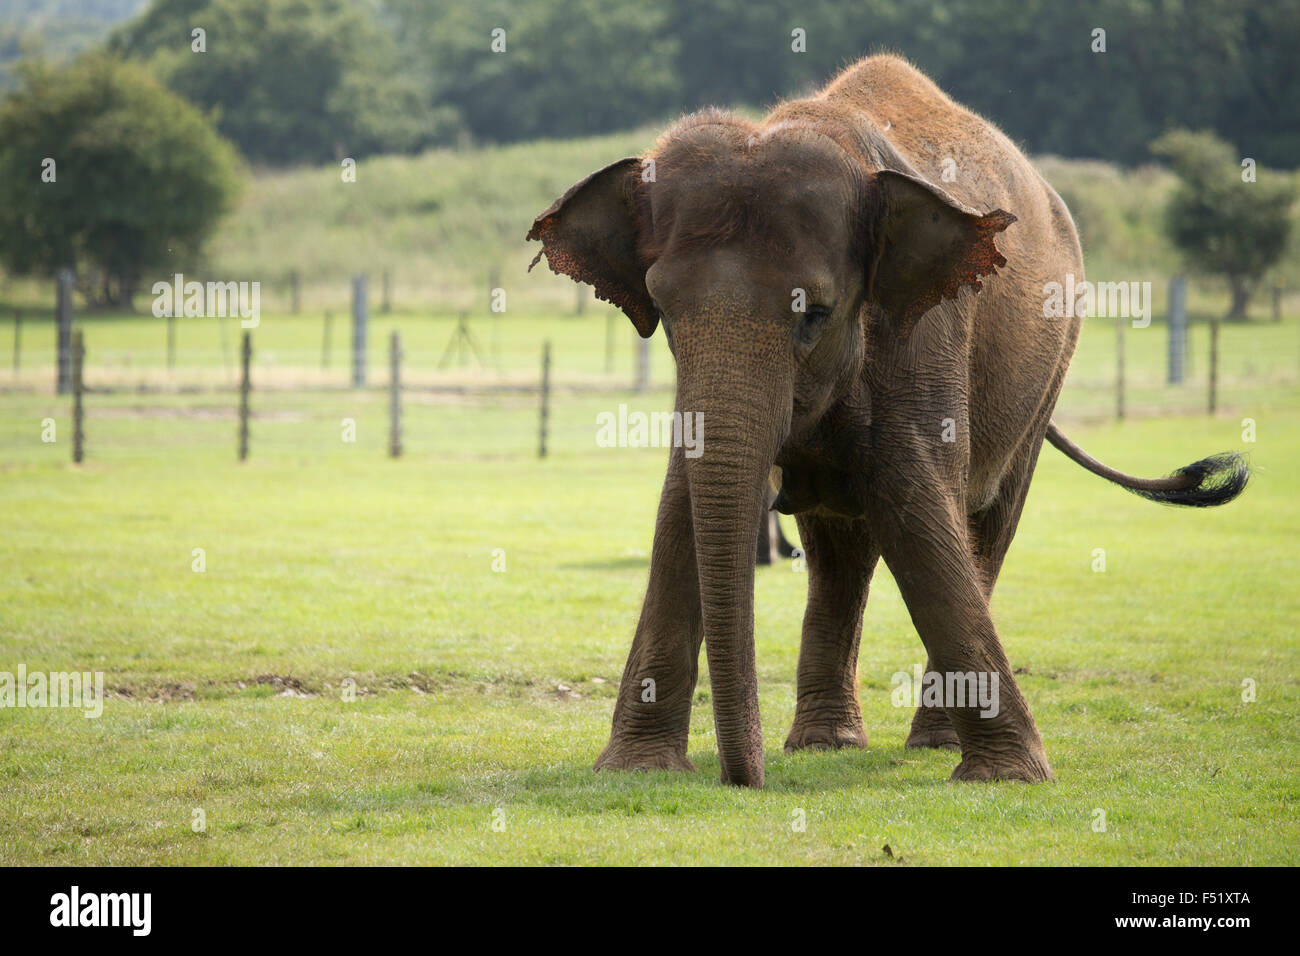 Large elephant Stock Photo